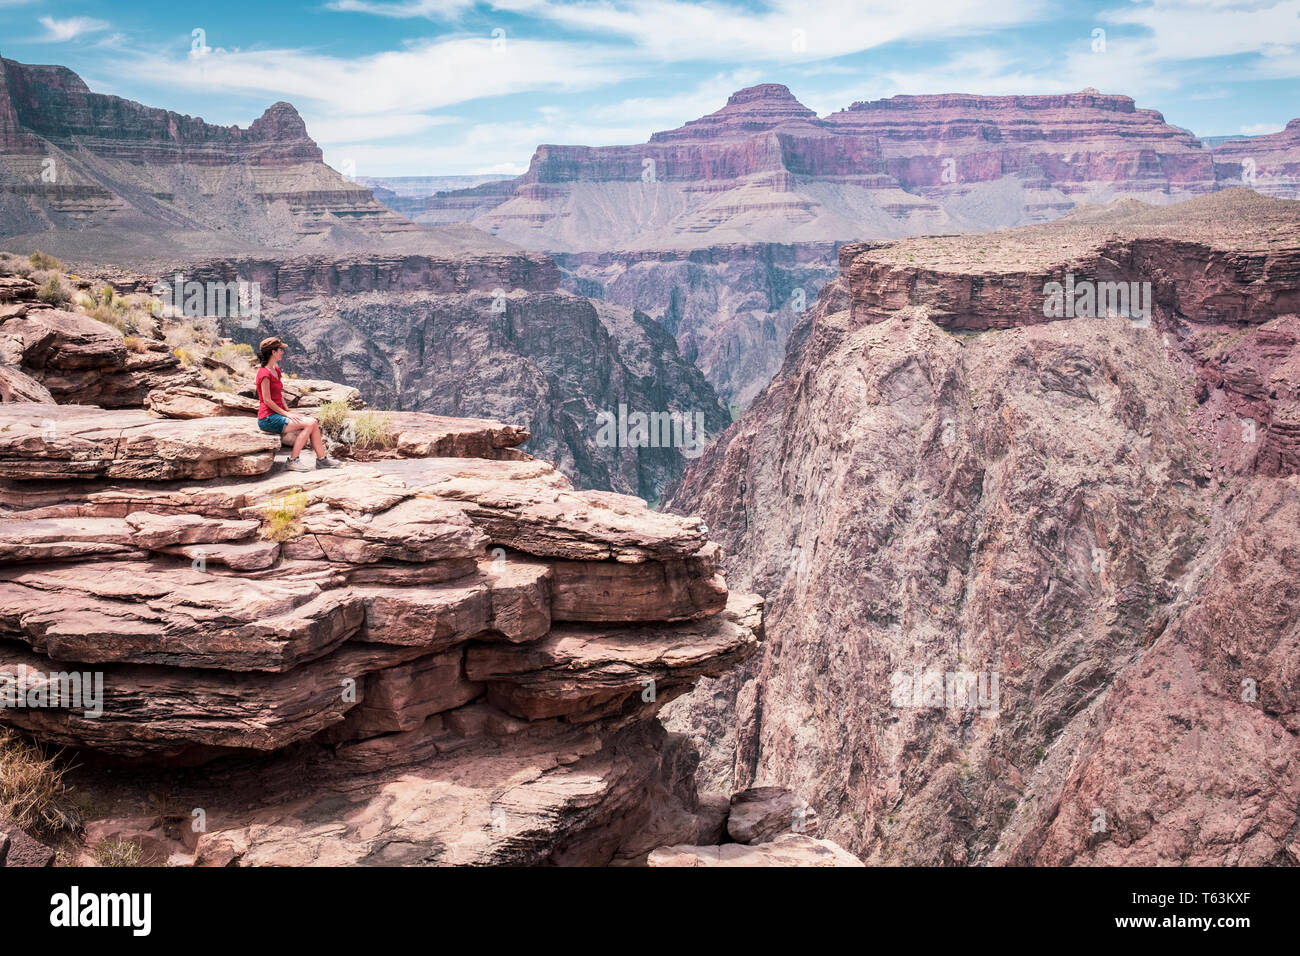 Visiteuse profitant d'une vue époustouflante sur la rivière Colorado Plateau de point à Grand Canyon National Park, Arizona, USA Banque D'Images